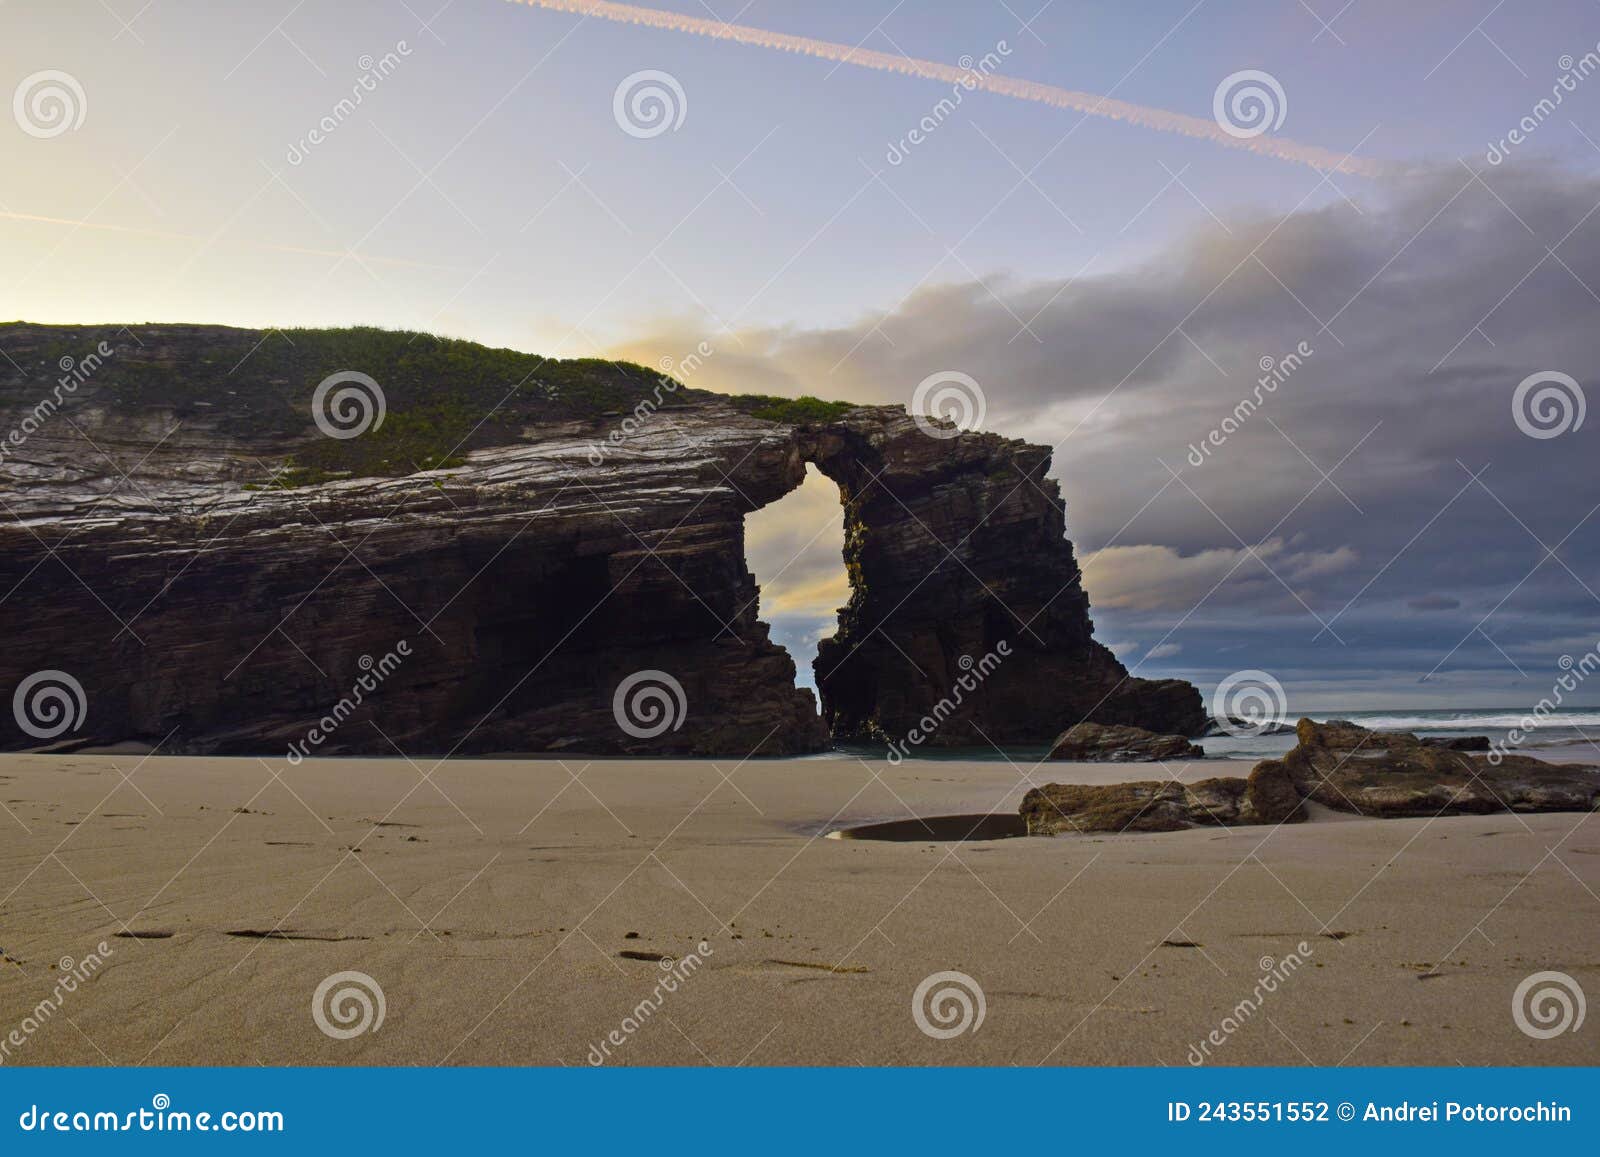 sandy beach with large rocks . praia de augas santas